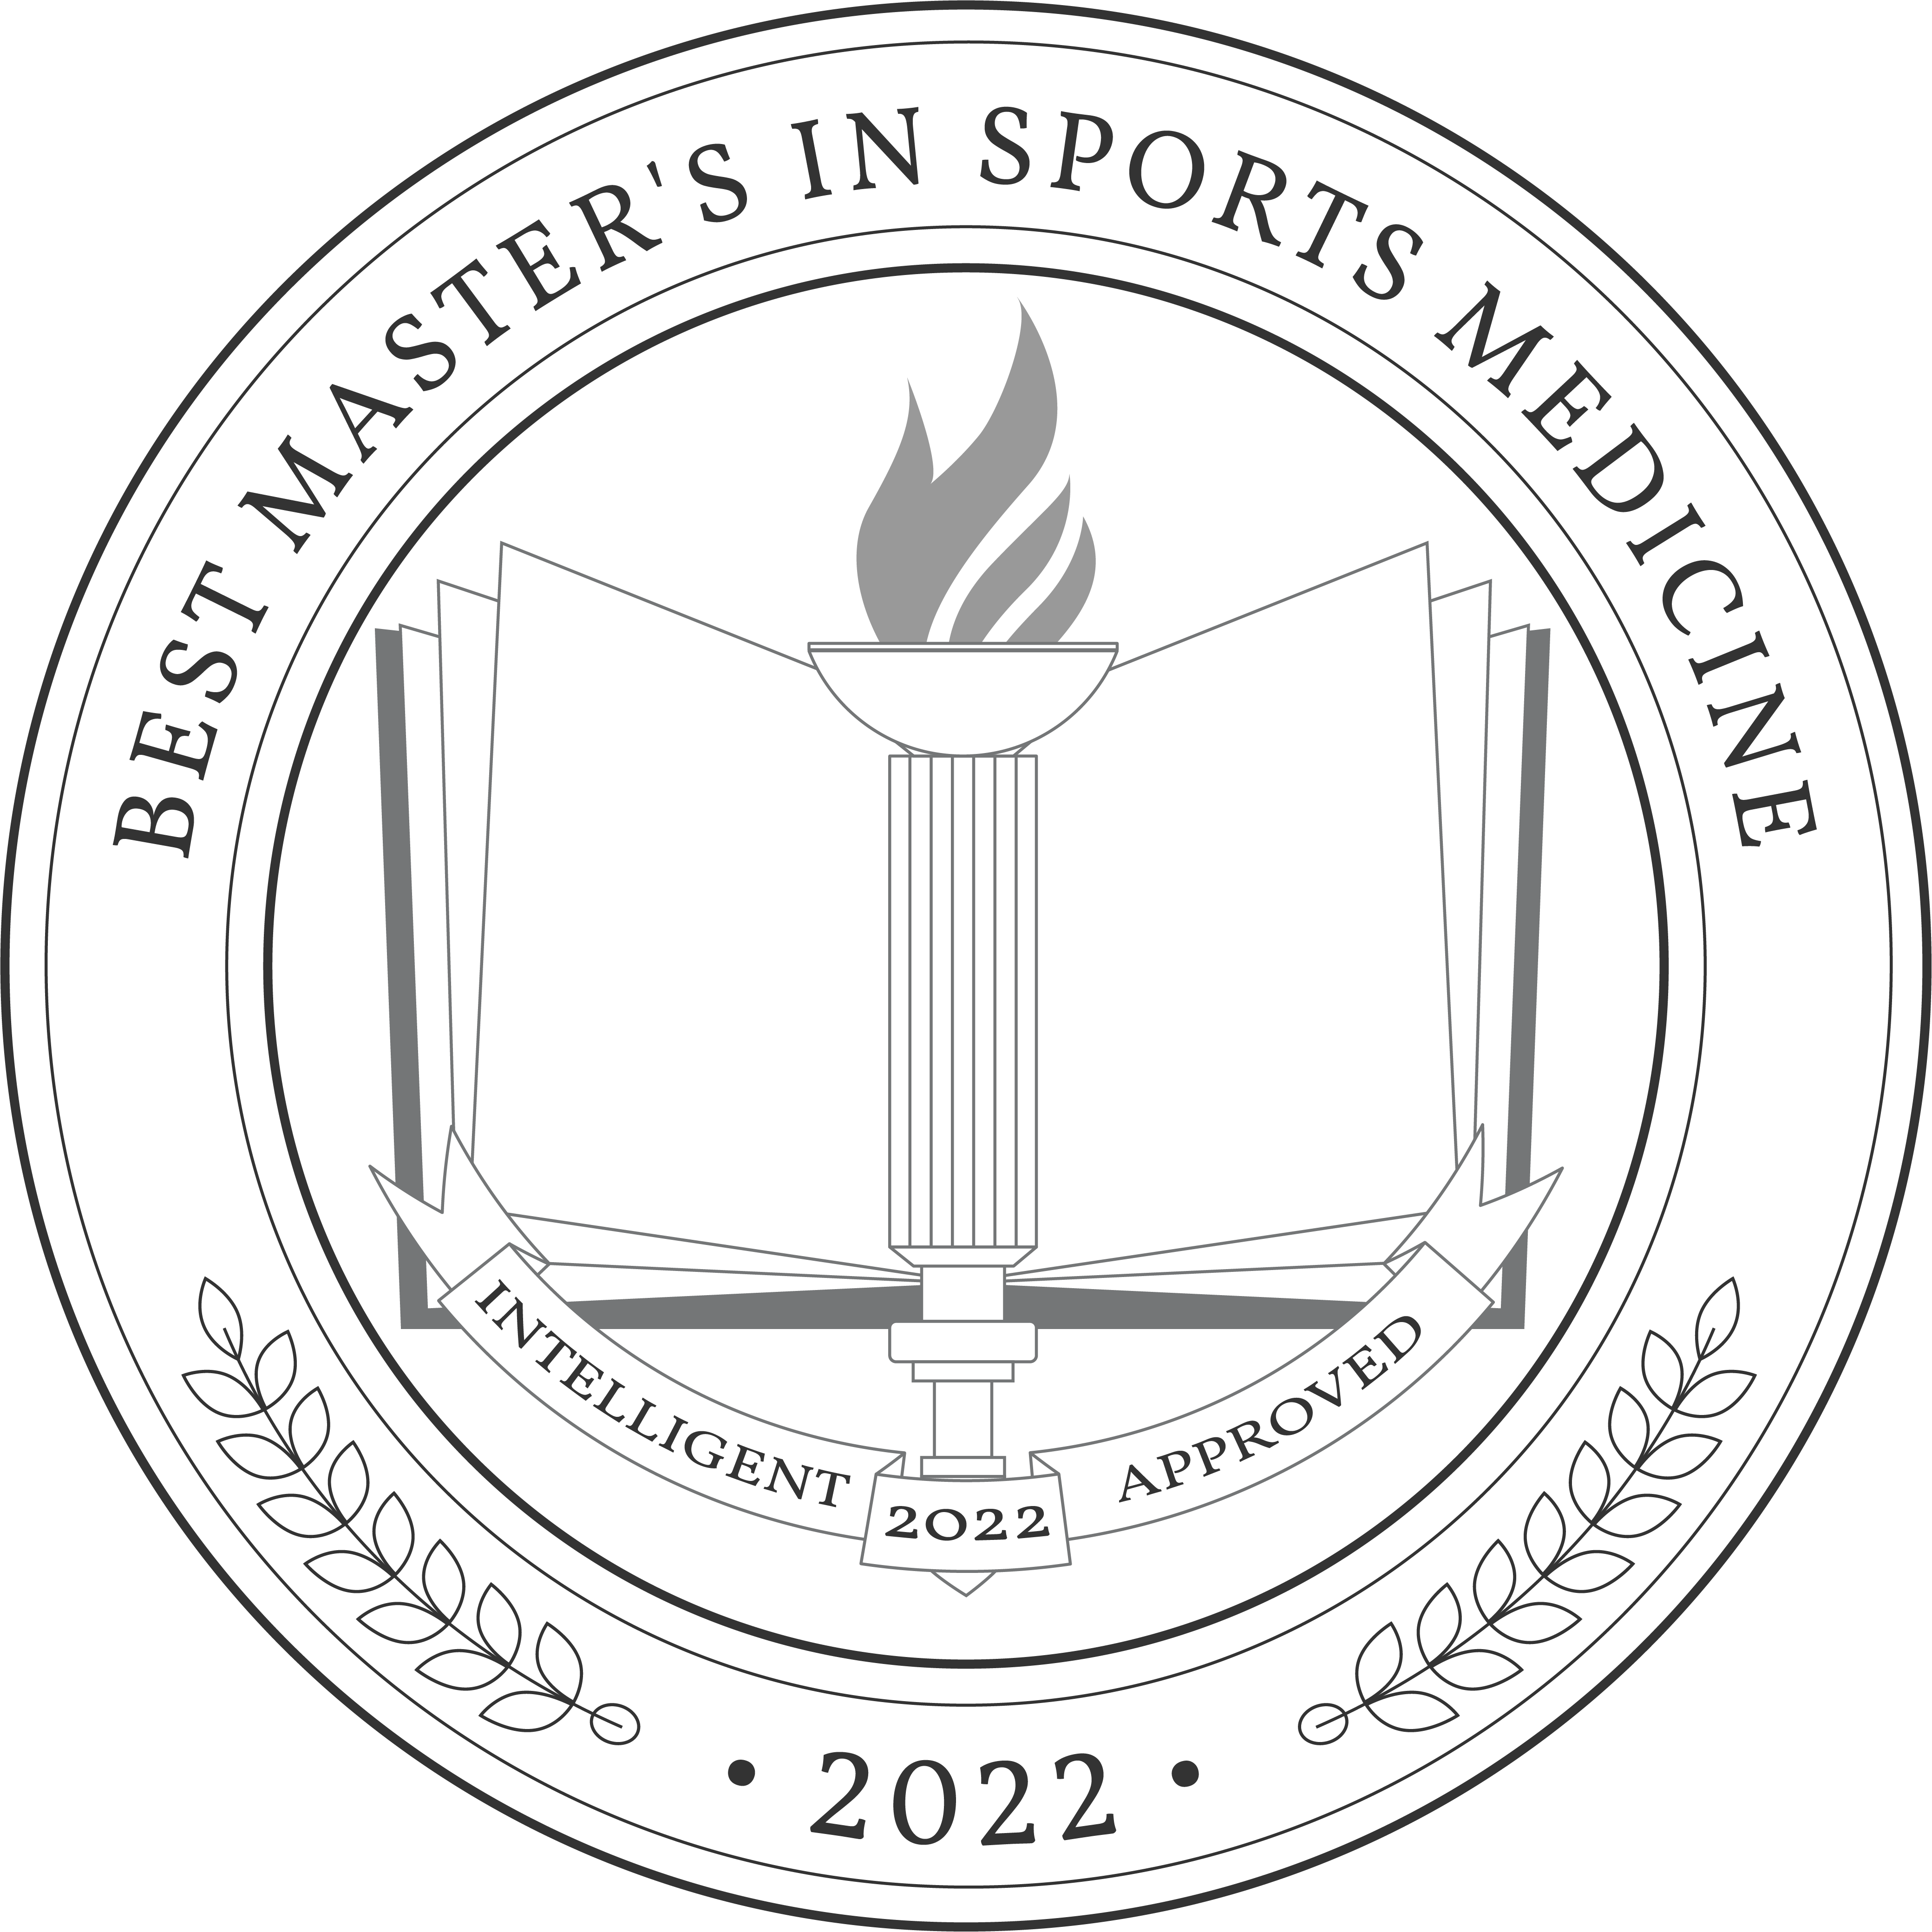 Best Master's in Sports Medicine Degree Programs